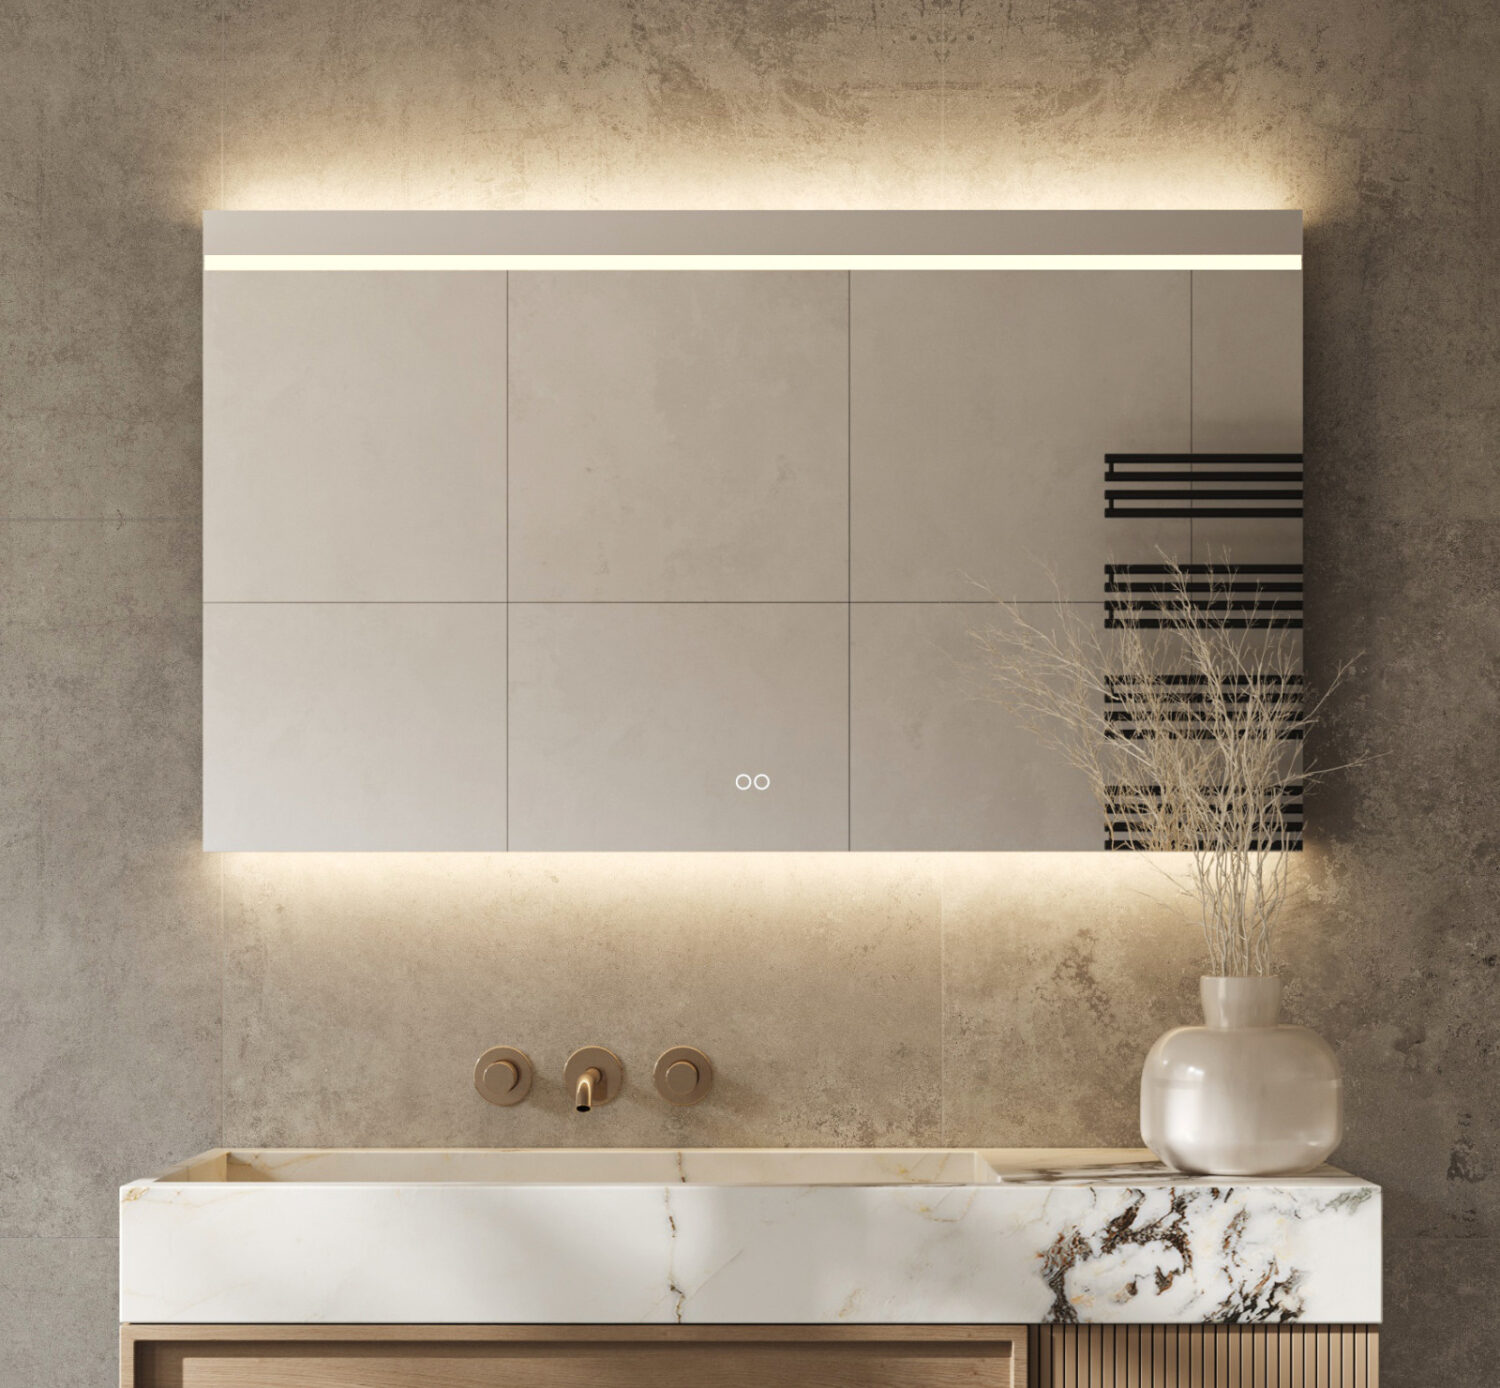 Deze fraaie spiegel van 120 cm breed en 70 cm hoog is van alle gemakken voorzien, zoals verlichting met dimfunctie + instelbare lichtkleur en spiegelverwarming